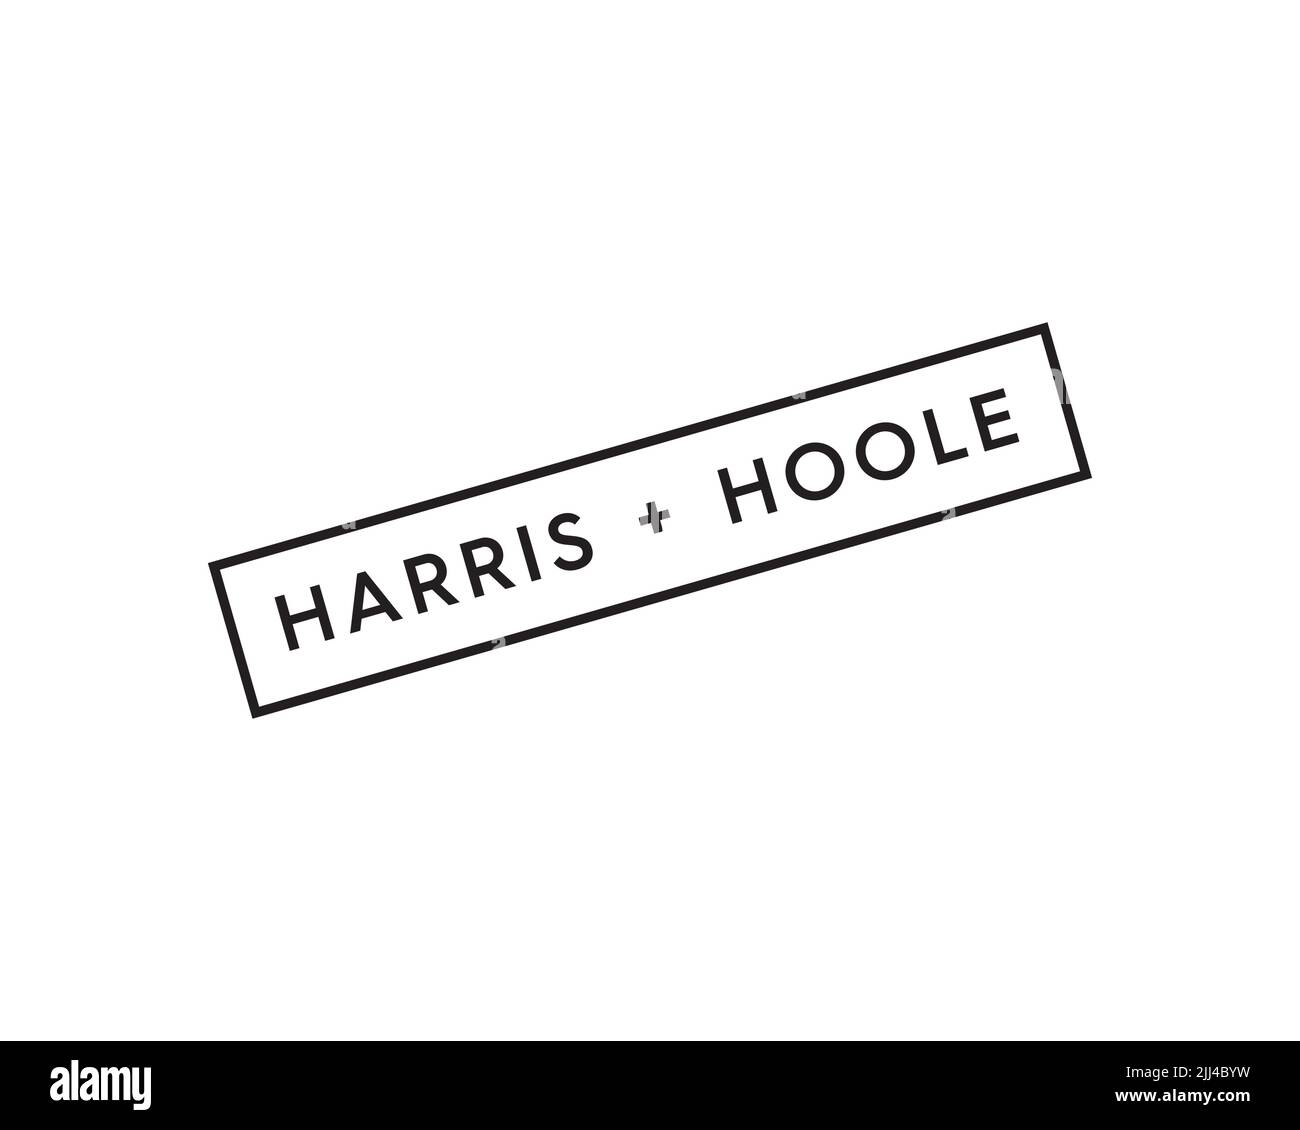 Harris + Hoole, rotated logo, white background Stock Photo